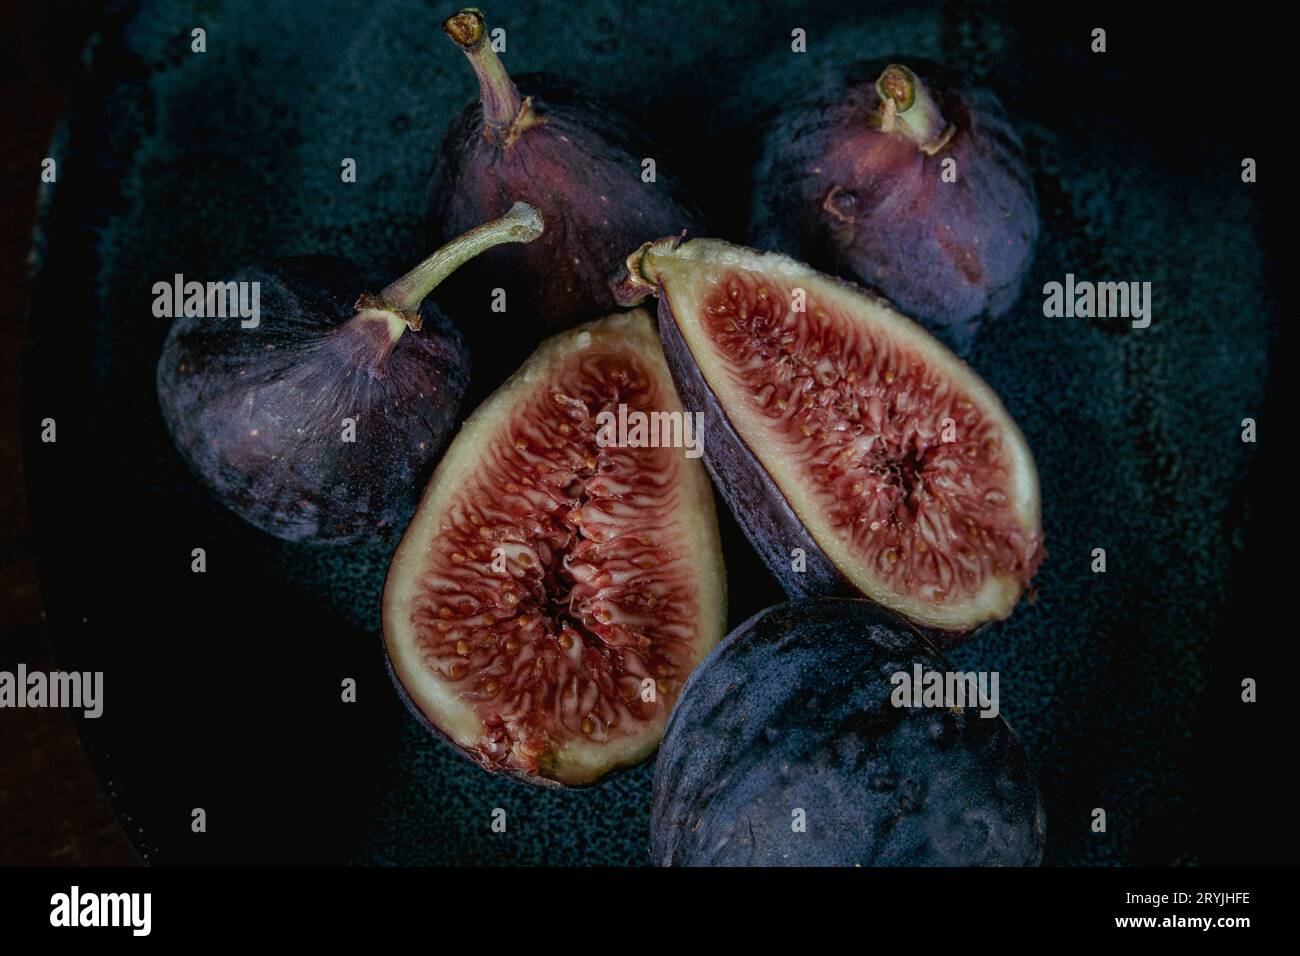 photo rapprochée de figues fruitières ; une figue coupée en 1/2, trois figues entières sur fond sombre. Banque D'Images